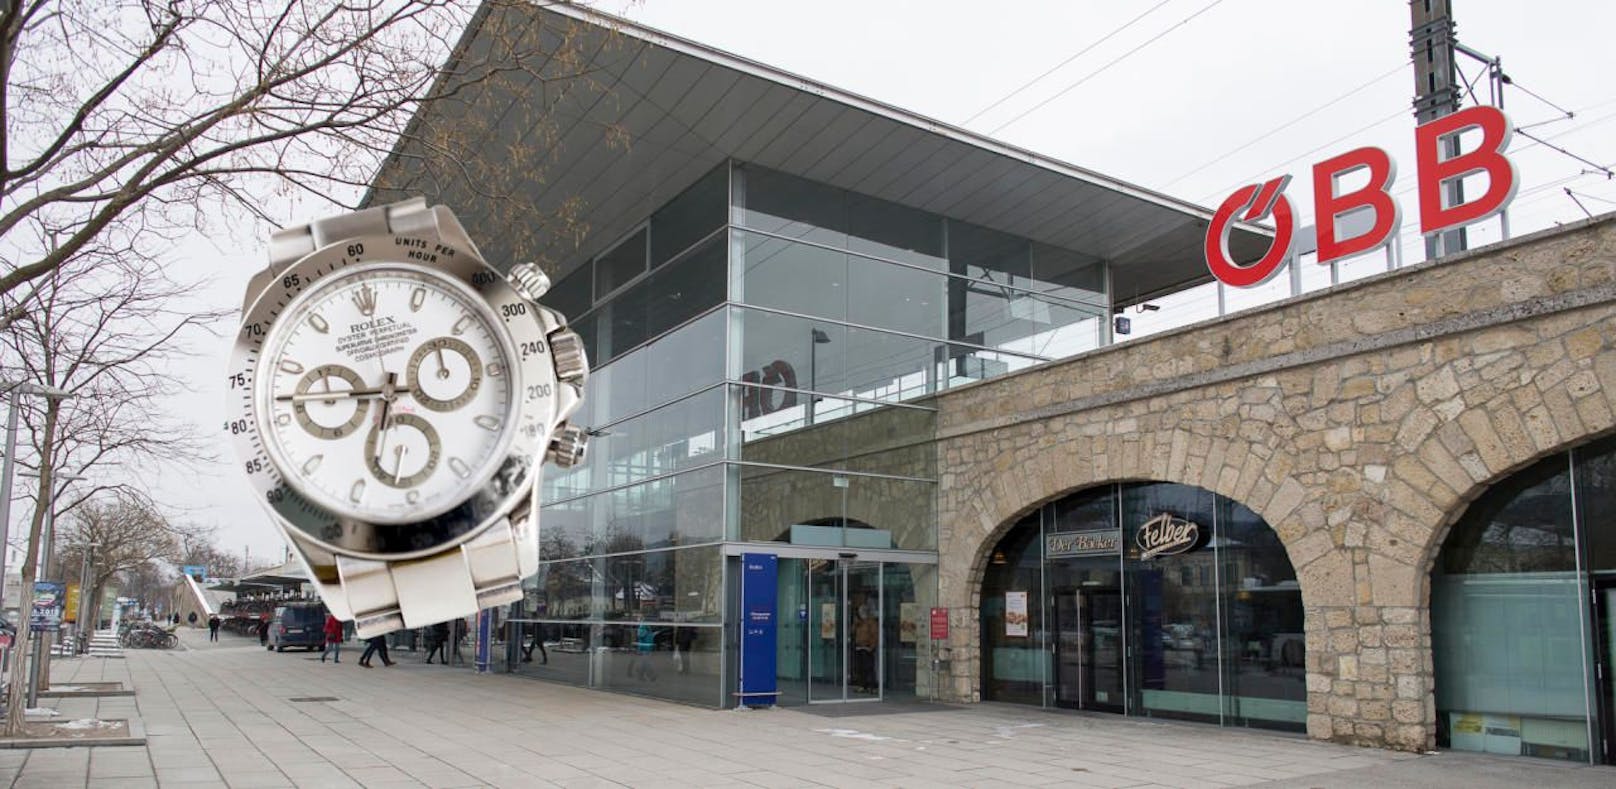 Am Bahnhof in Baden stahl der 17-Jährige dem Mann die Rolex.